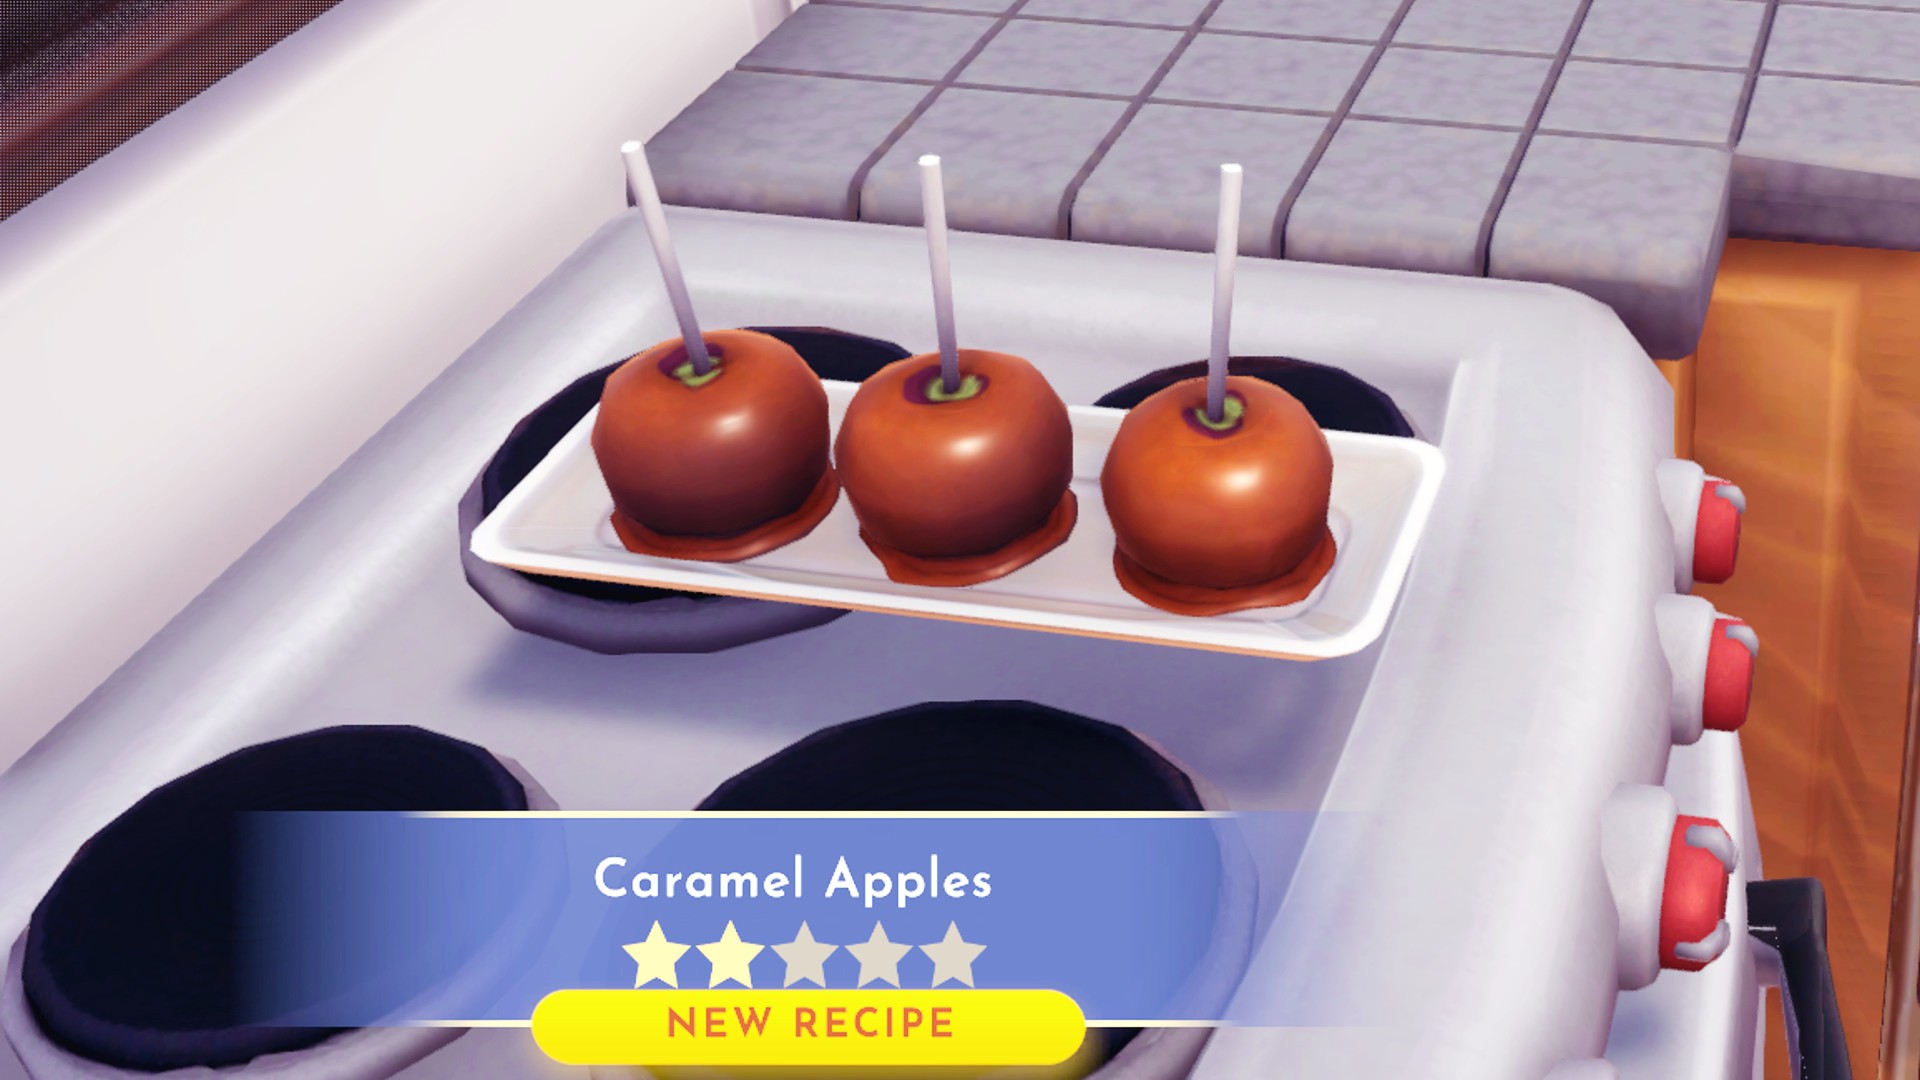 حلويات وادي ديزني دريملايت: يجلس ثلاثة تفاح بالكراميل على طبق ، مما يوضح وصفة من فئة النجوم